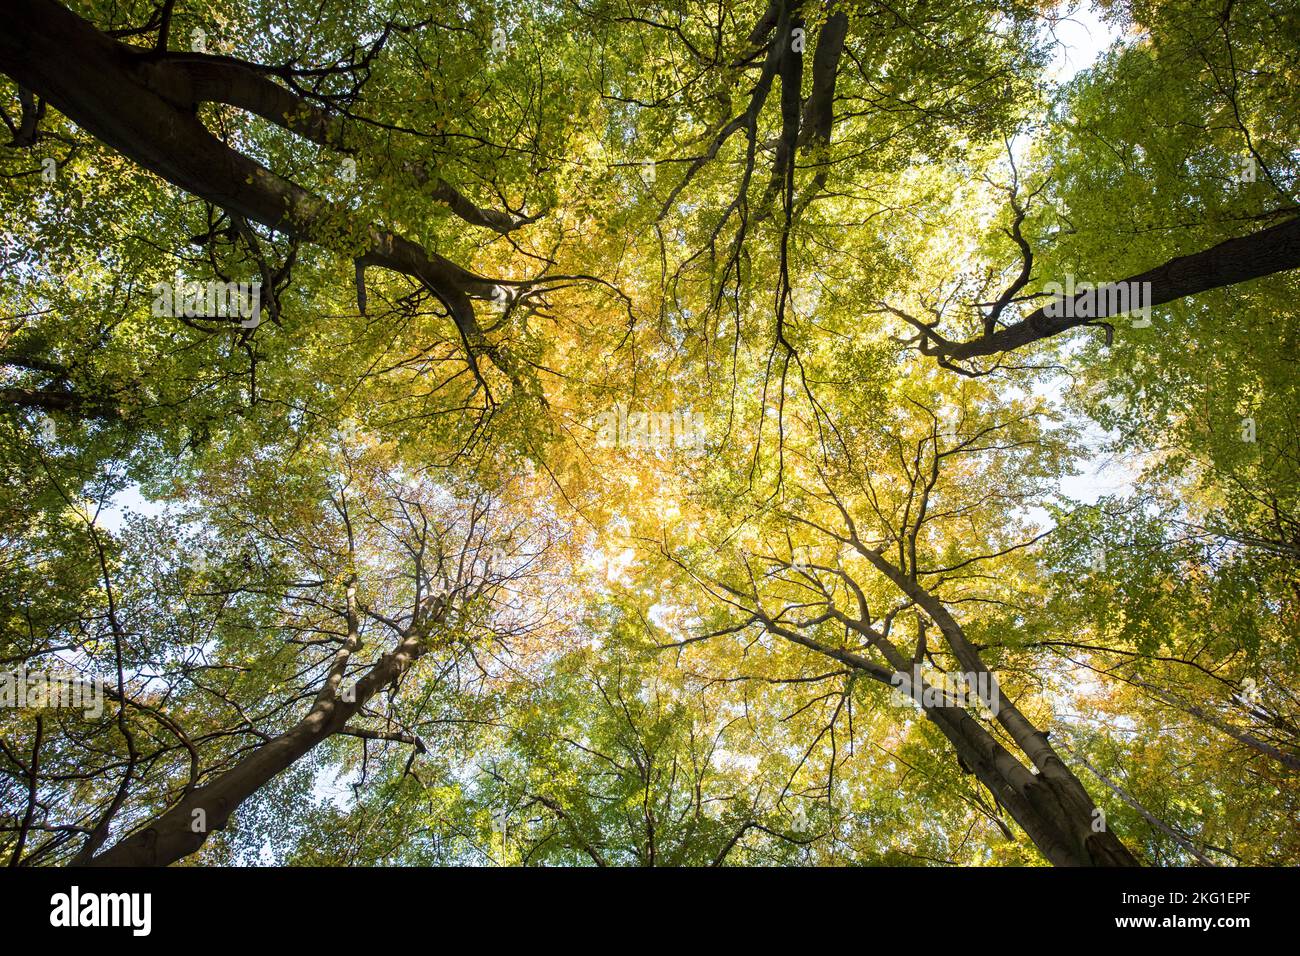 Baumkronen in einem Wald des Stenzelbergs im Siebengebirge bei Königswinter, Nordrhein-Westfalen, Deutschland. Baumkronen im Stockfoto